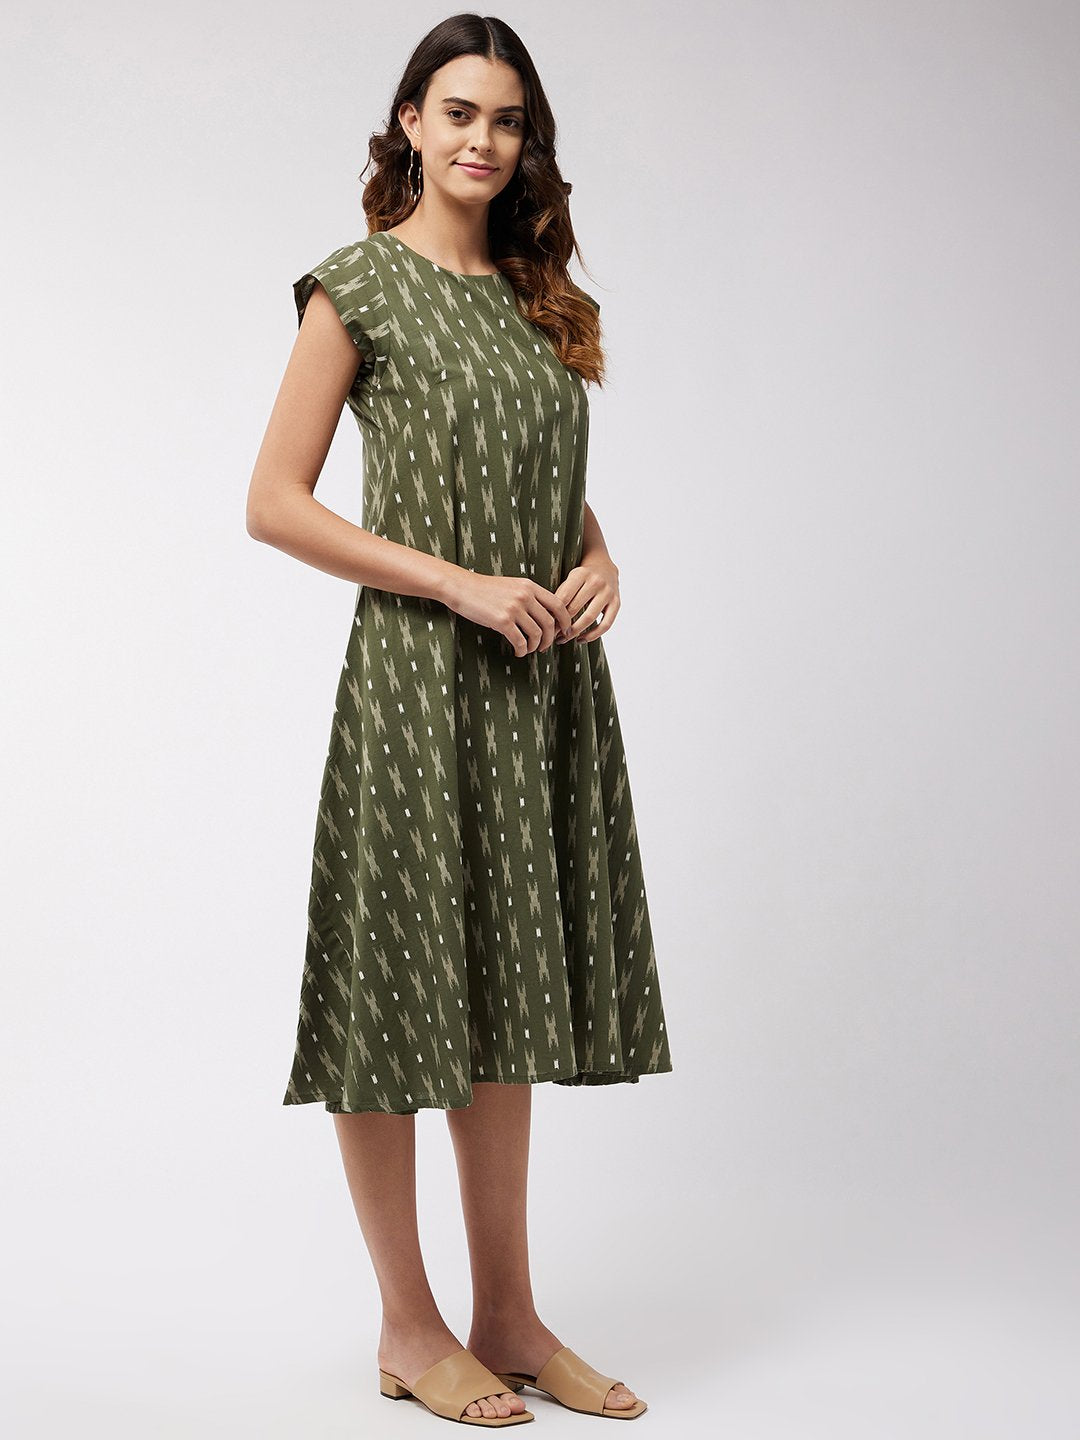 Moss Green Ikkat Dress